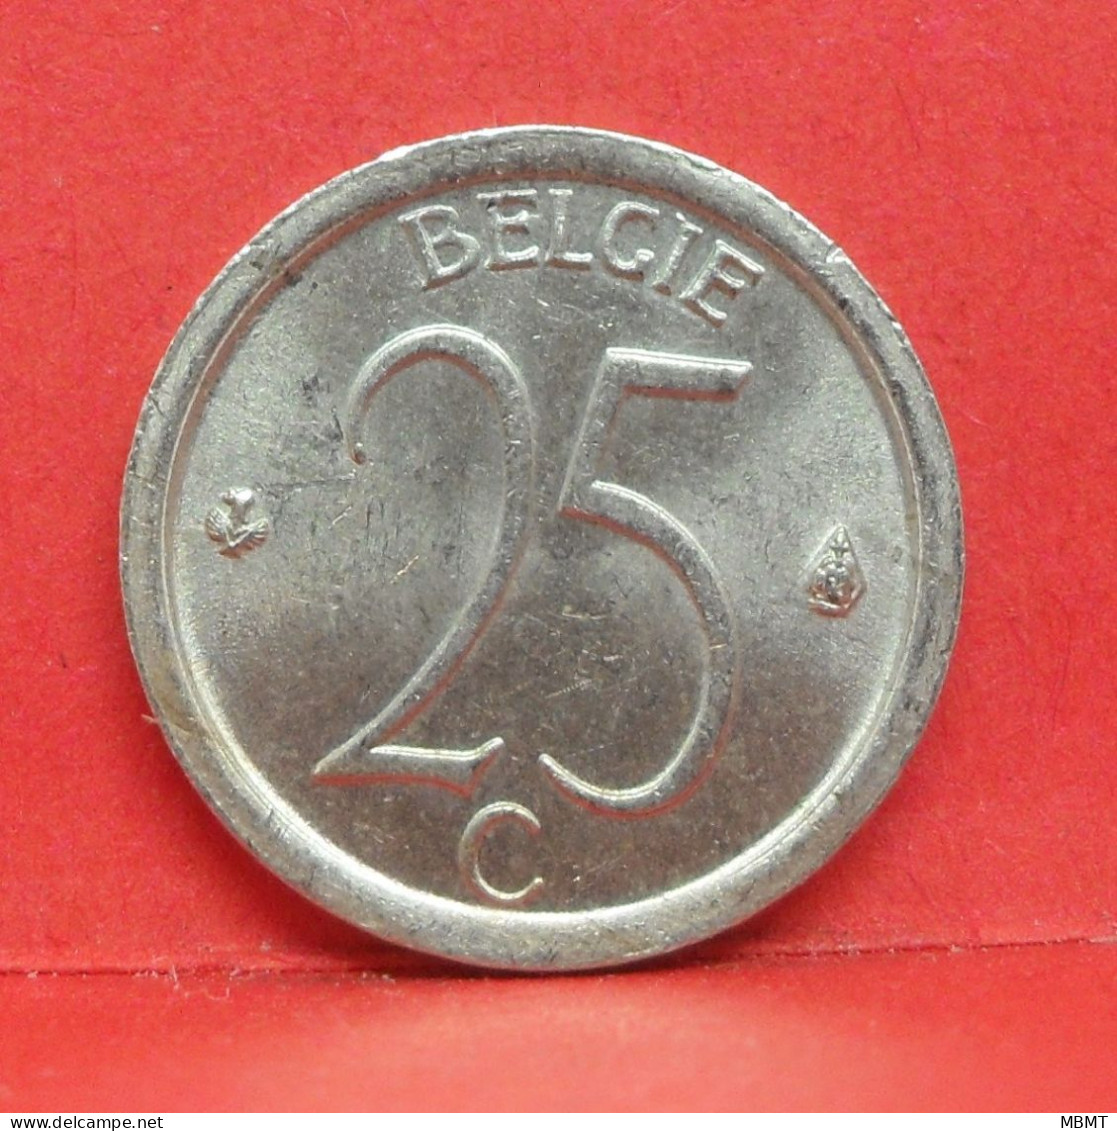 25 Centimes 1969 - TTB - Pièce Monnaie Belgie - Article N°1866 - 25 Cents